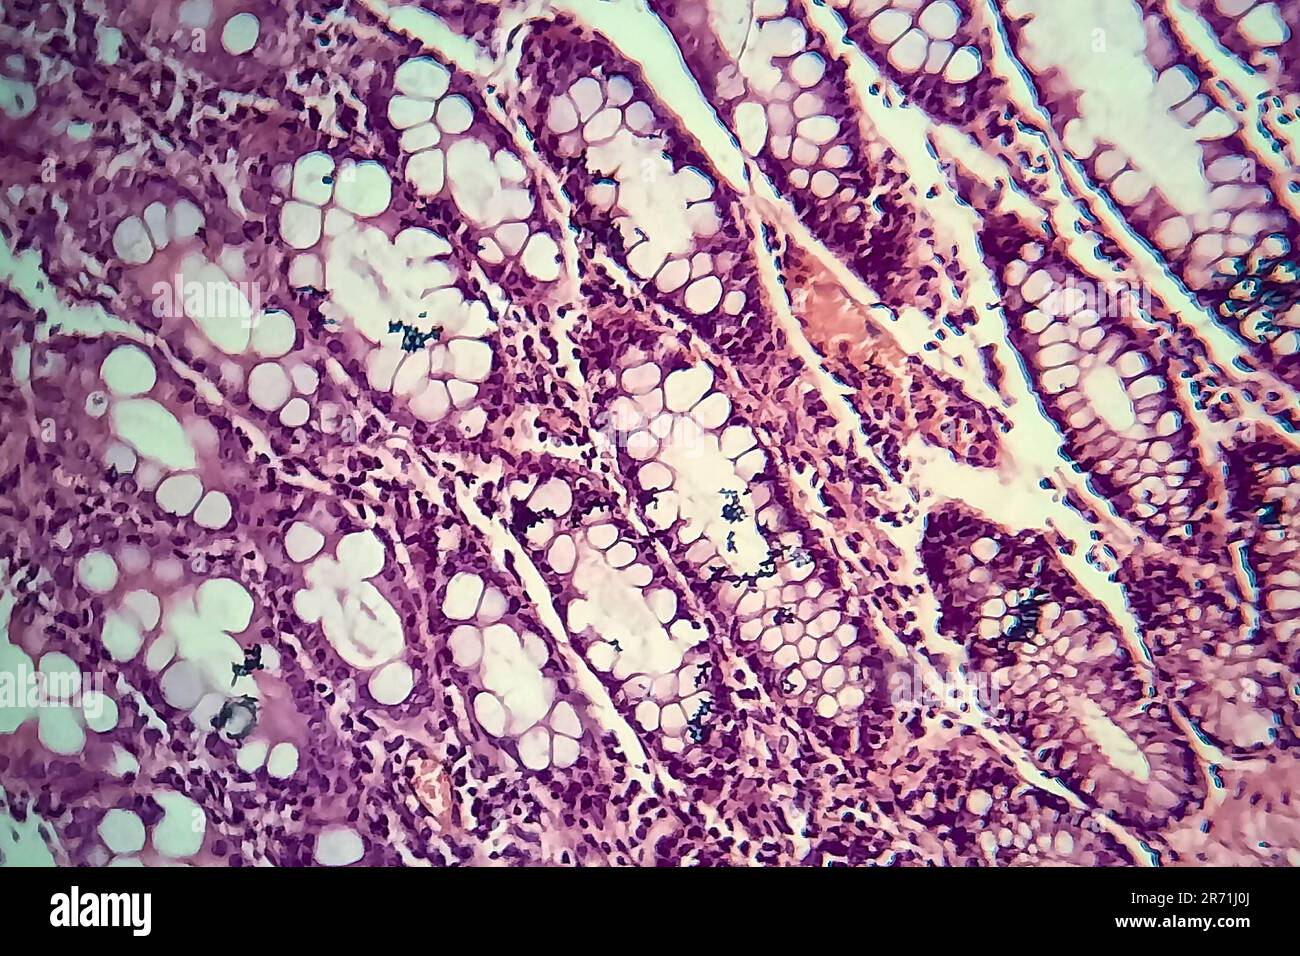 Bakterielle Dysenterie, Lichtmikroskopie, Foto unter dem Mikroskop, das das Vorhandensein von Bakterien und die Ansammlung von Entzündungszellen im Darmepithe zeigt Stockfoto